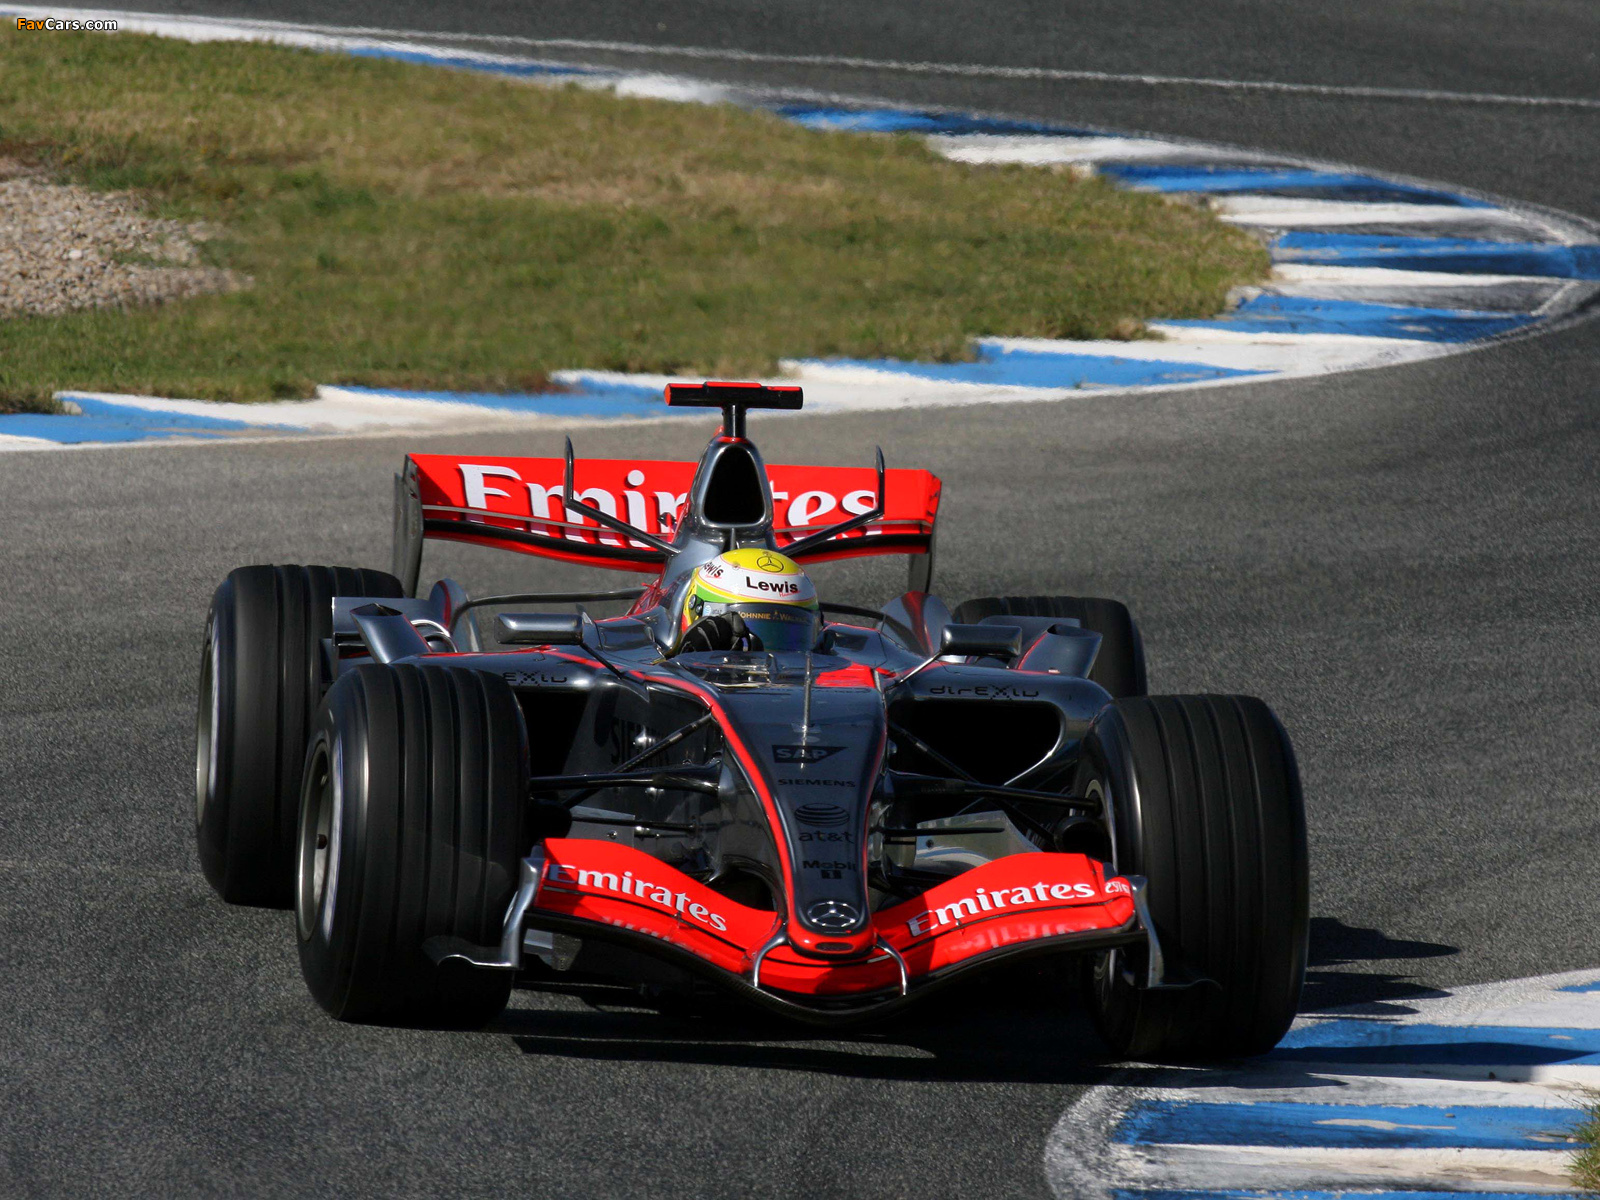 2006 McLaren MP4 21